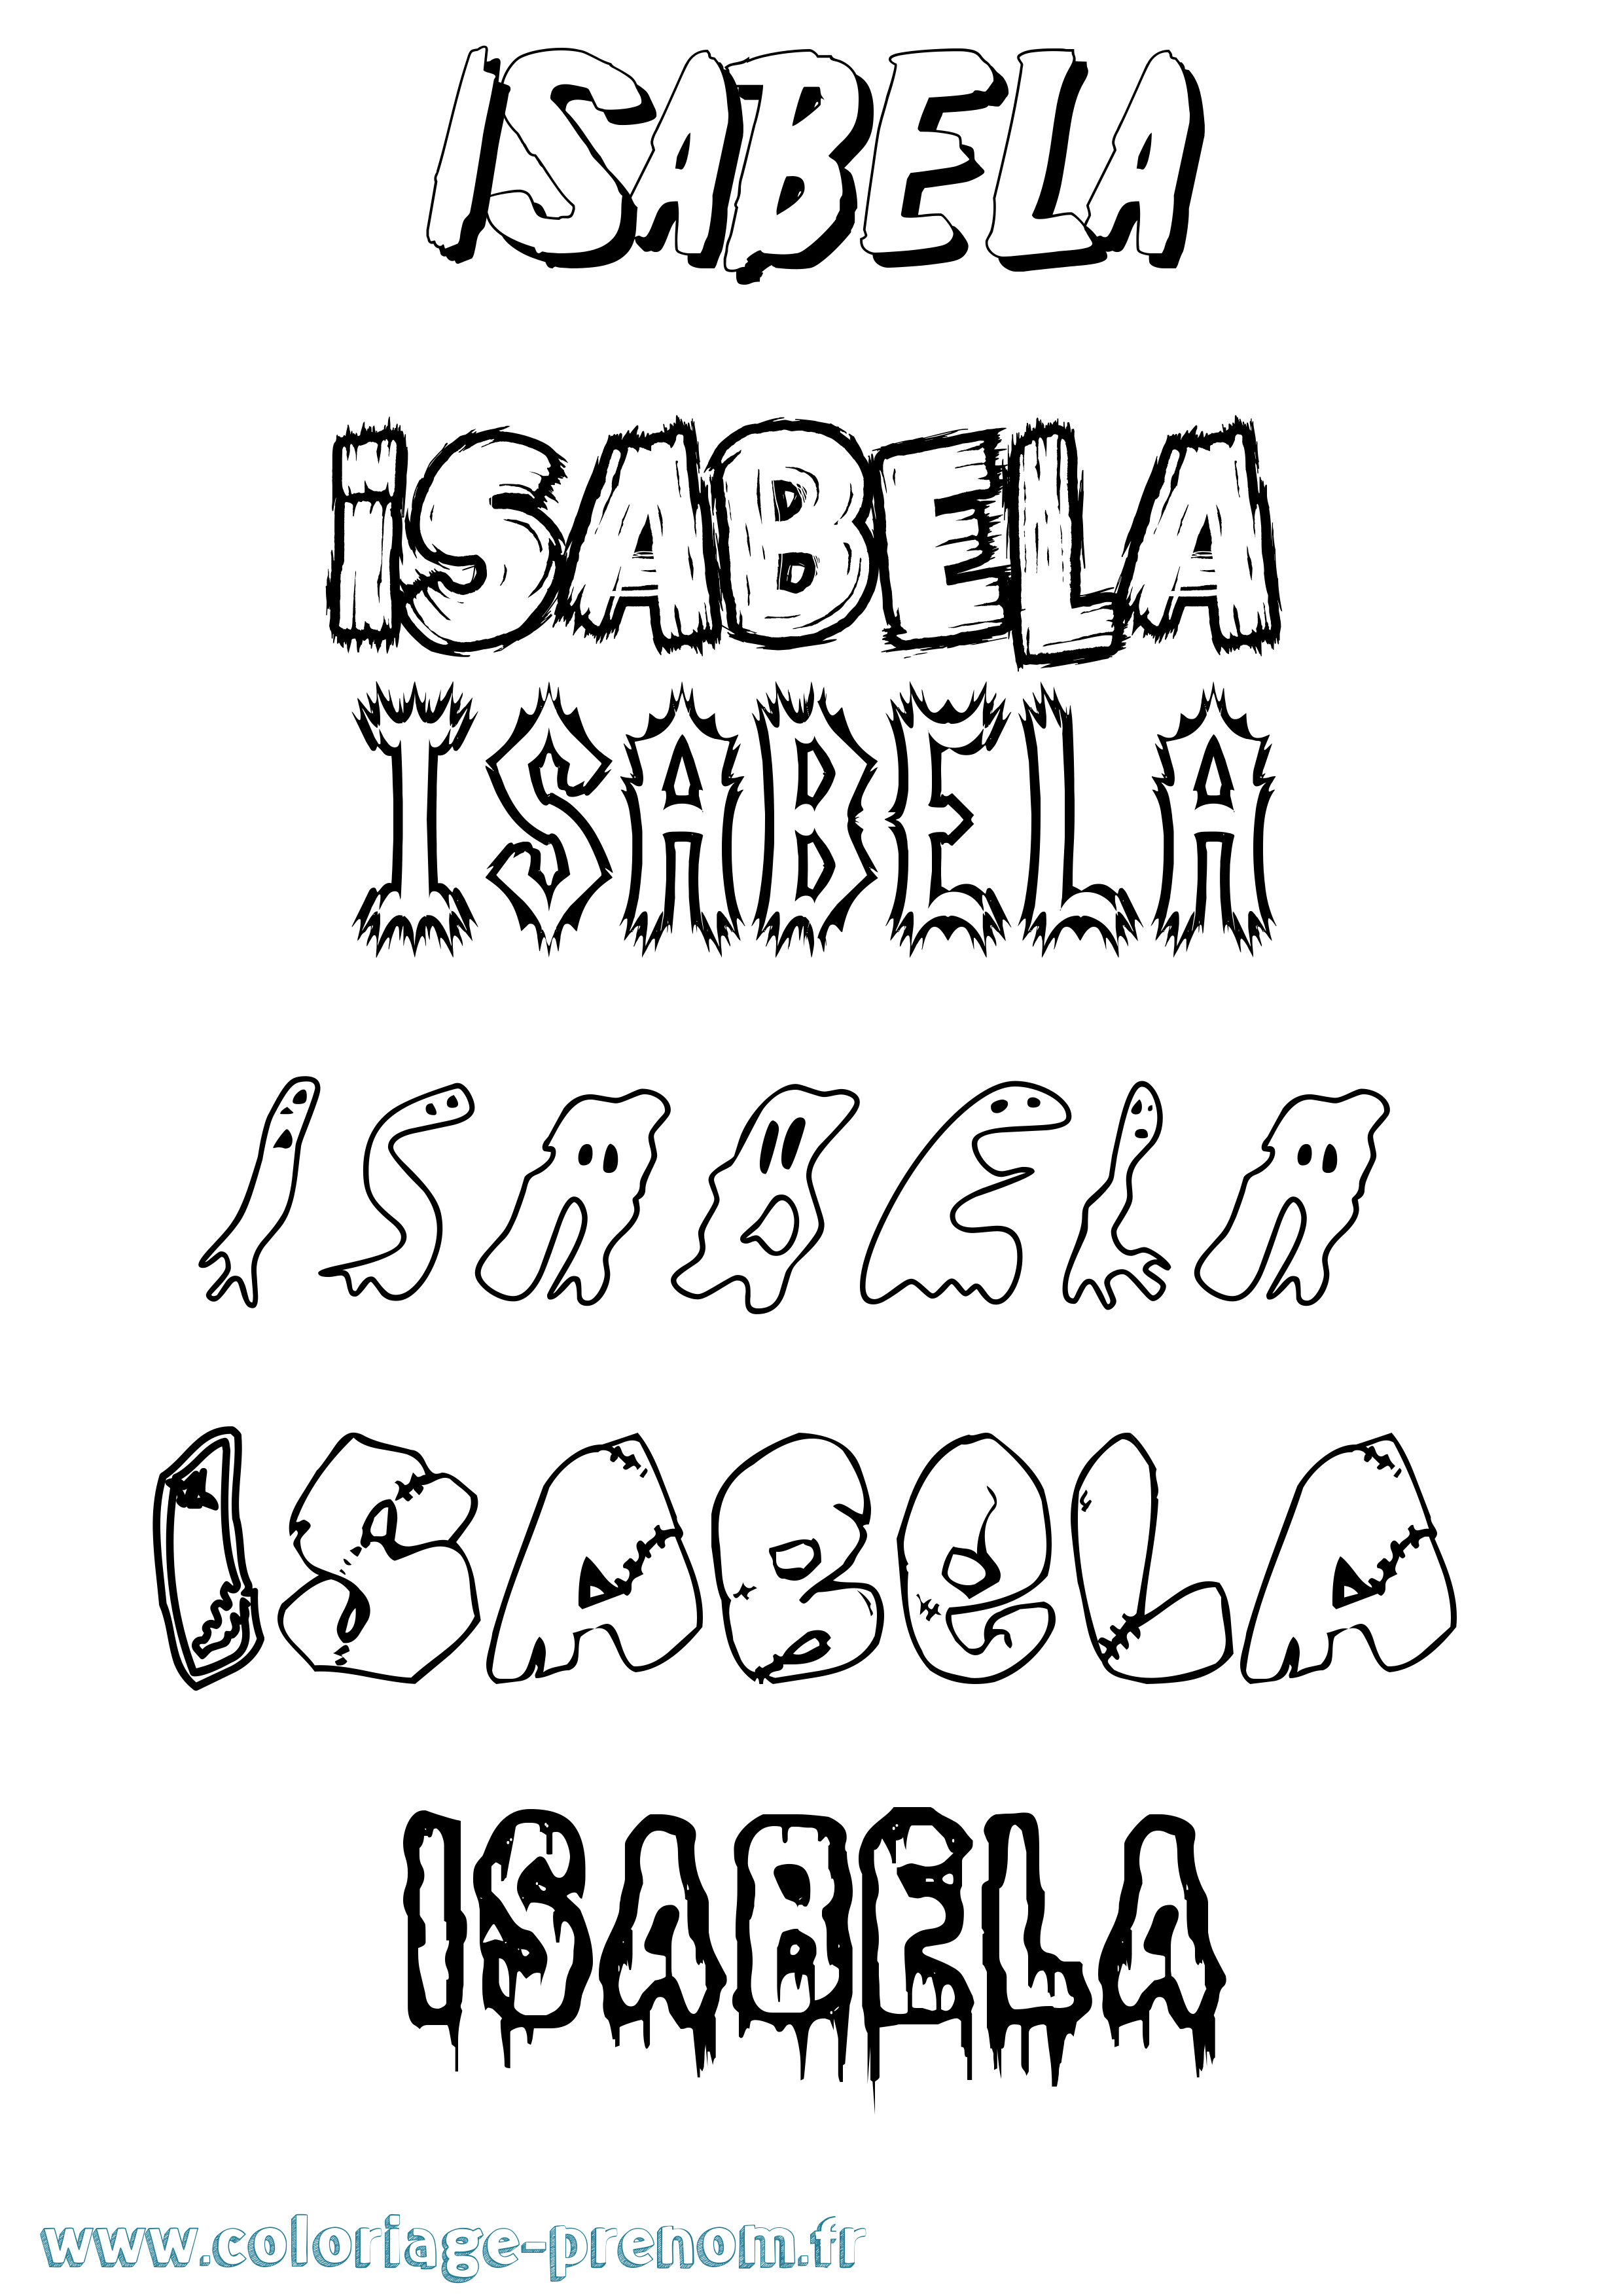 Coloriage prénom Isabela Frisson